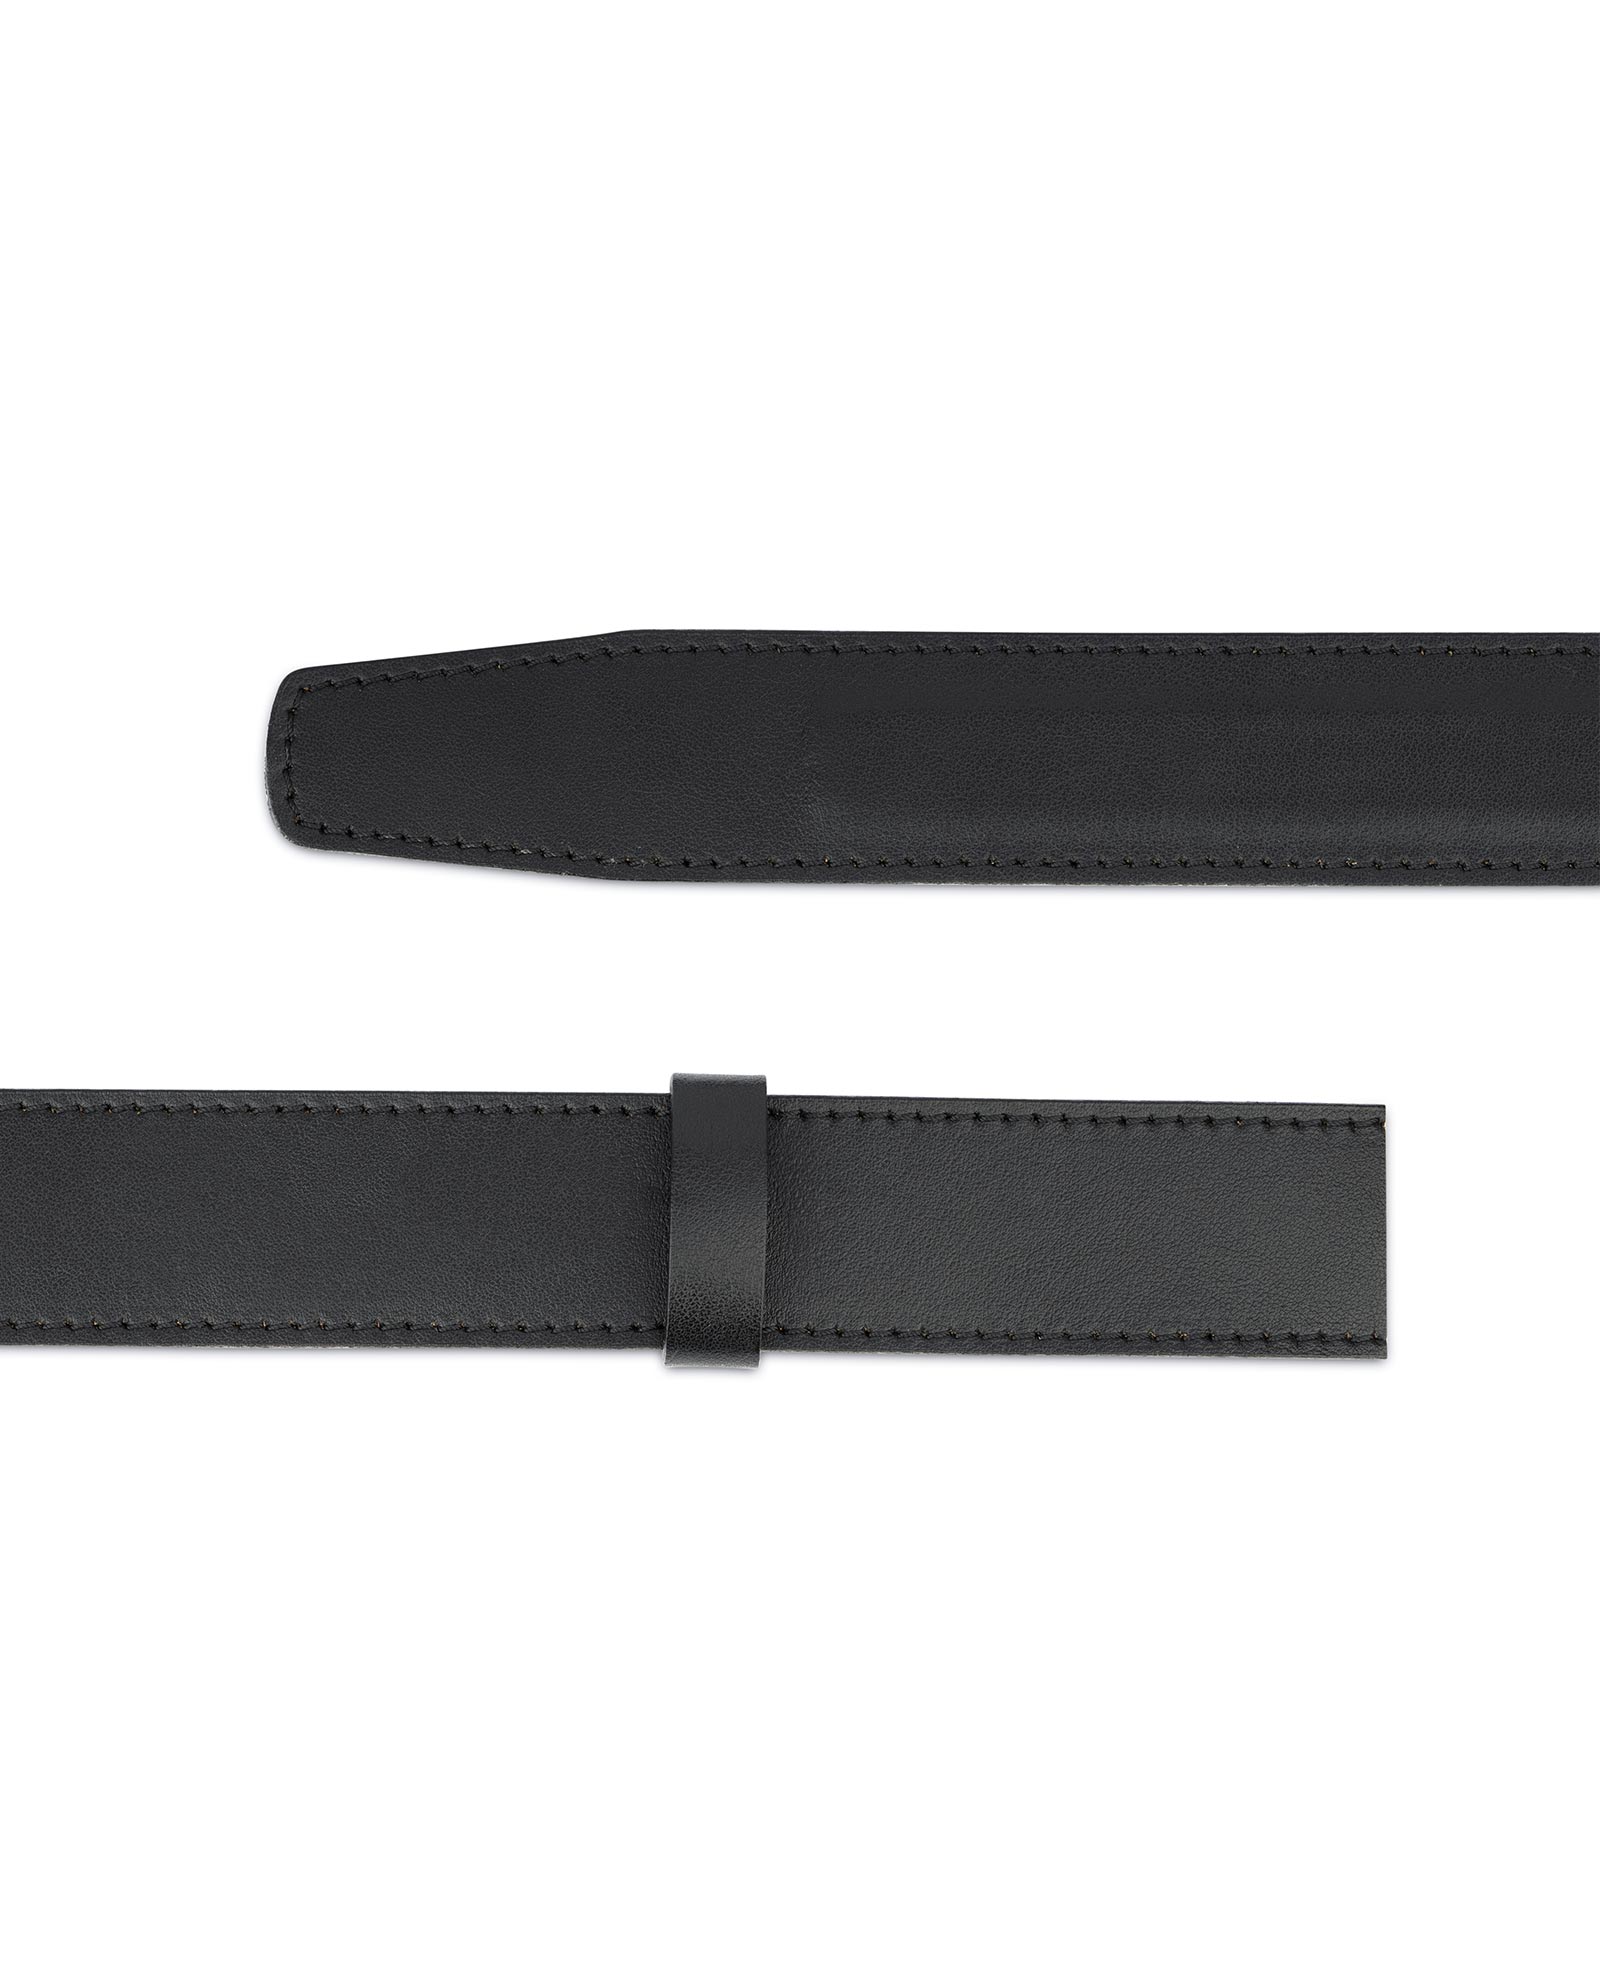 Buy Black Leather Strap for Ratchet Belt | LeatherBeltsOnline.com